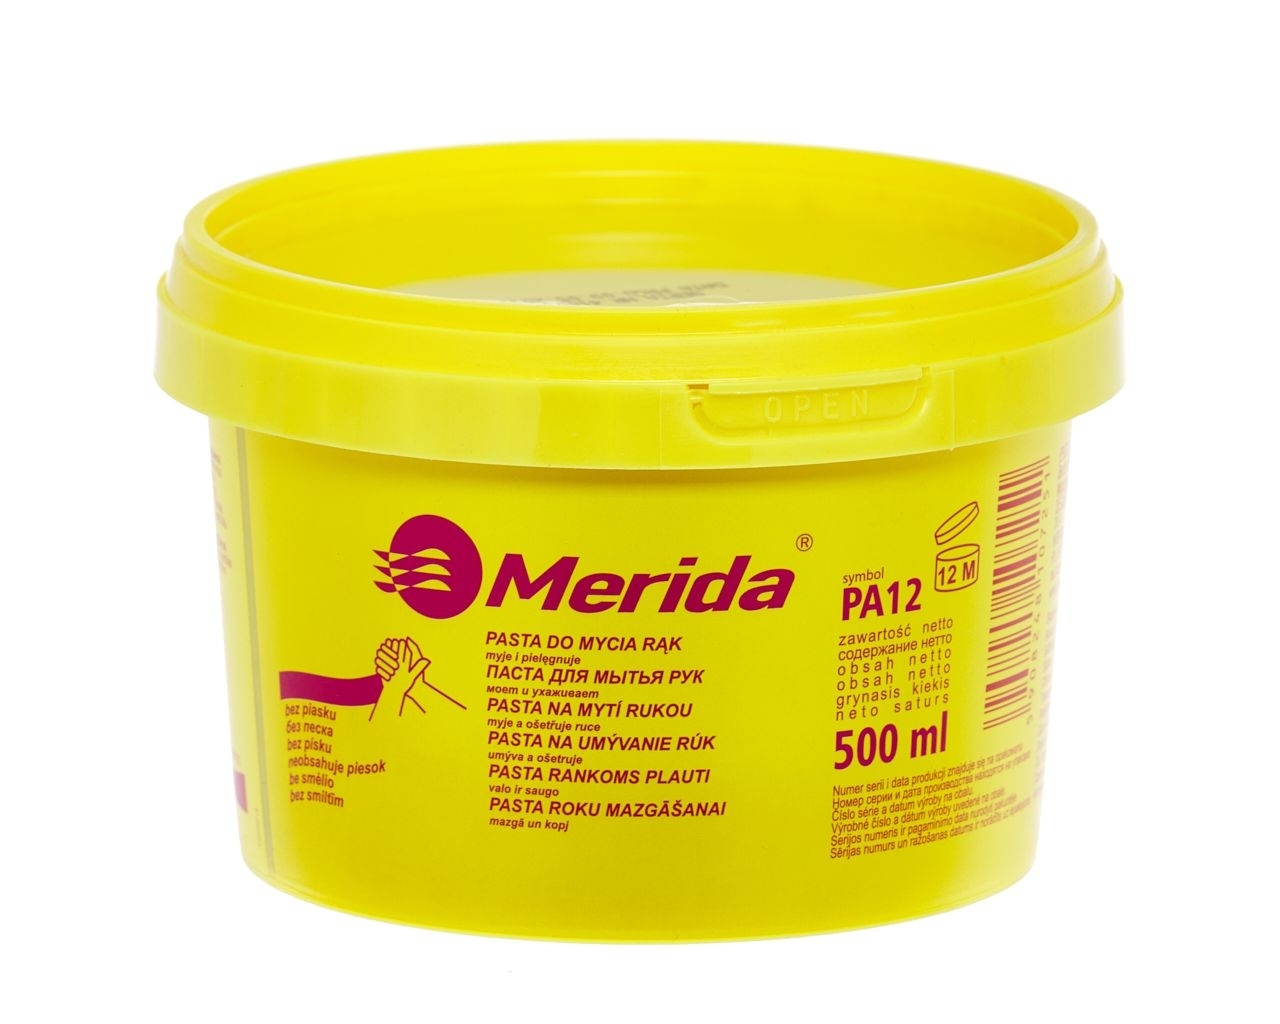 Pasta do mycia rąk MERIDA, opakowanie 500 g, testowana dermatologicznie